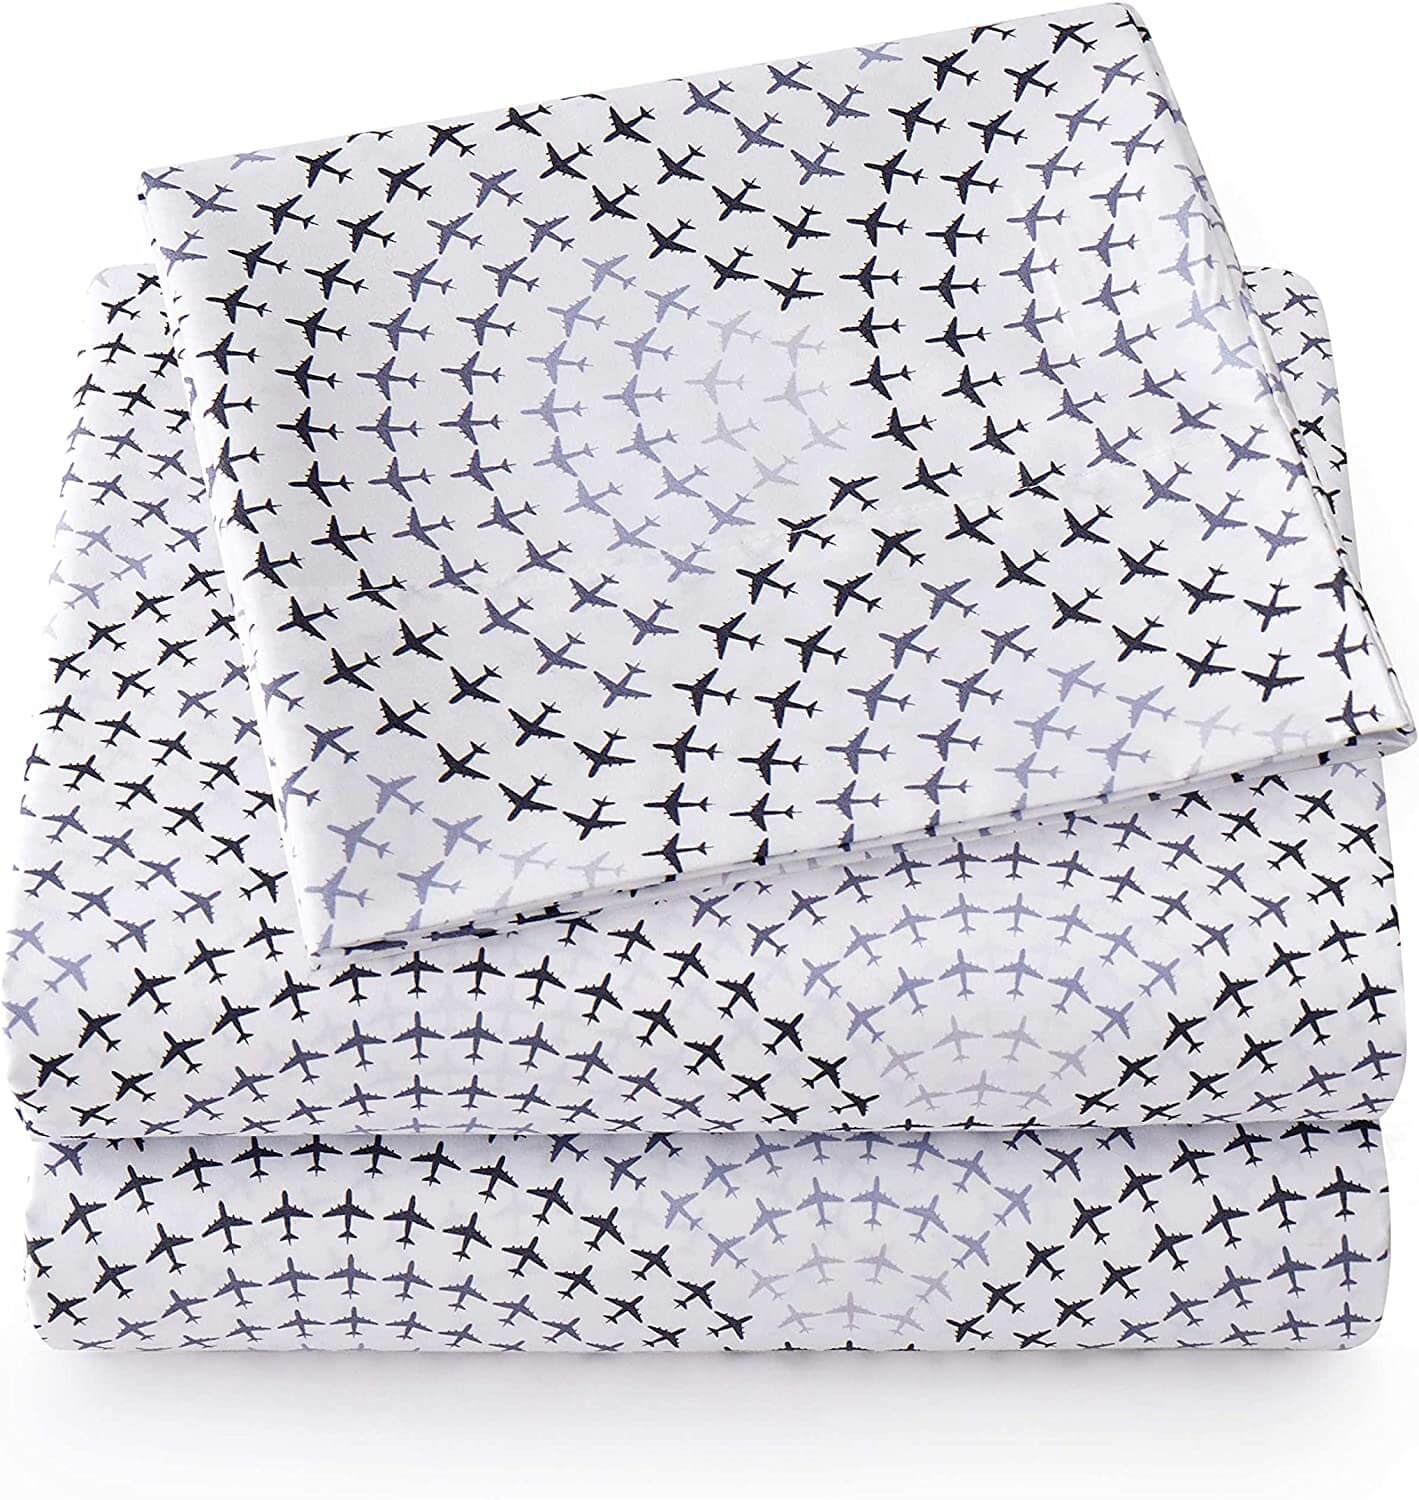 Комплект постельного белья Sweet Home Collection Cozy Bedding, 4 предмета, белый/серый